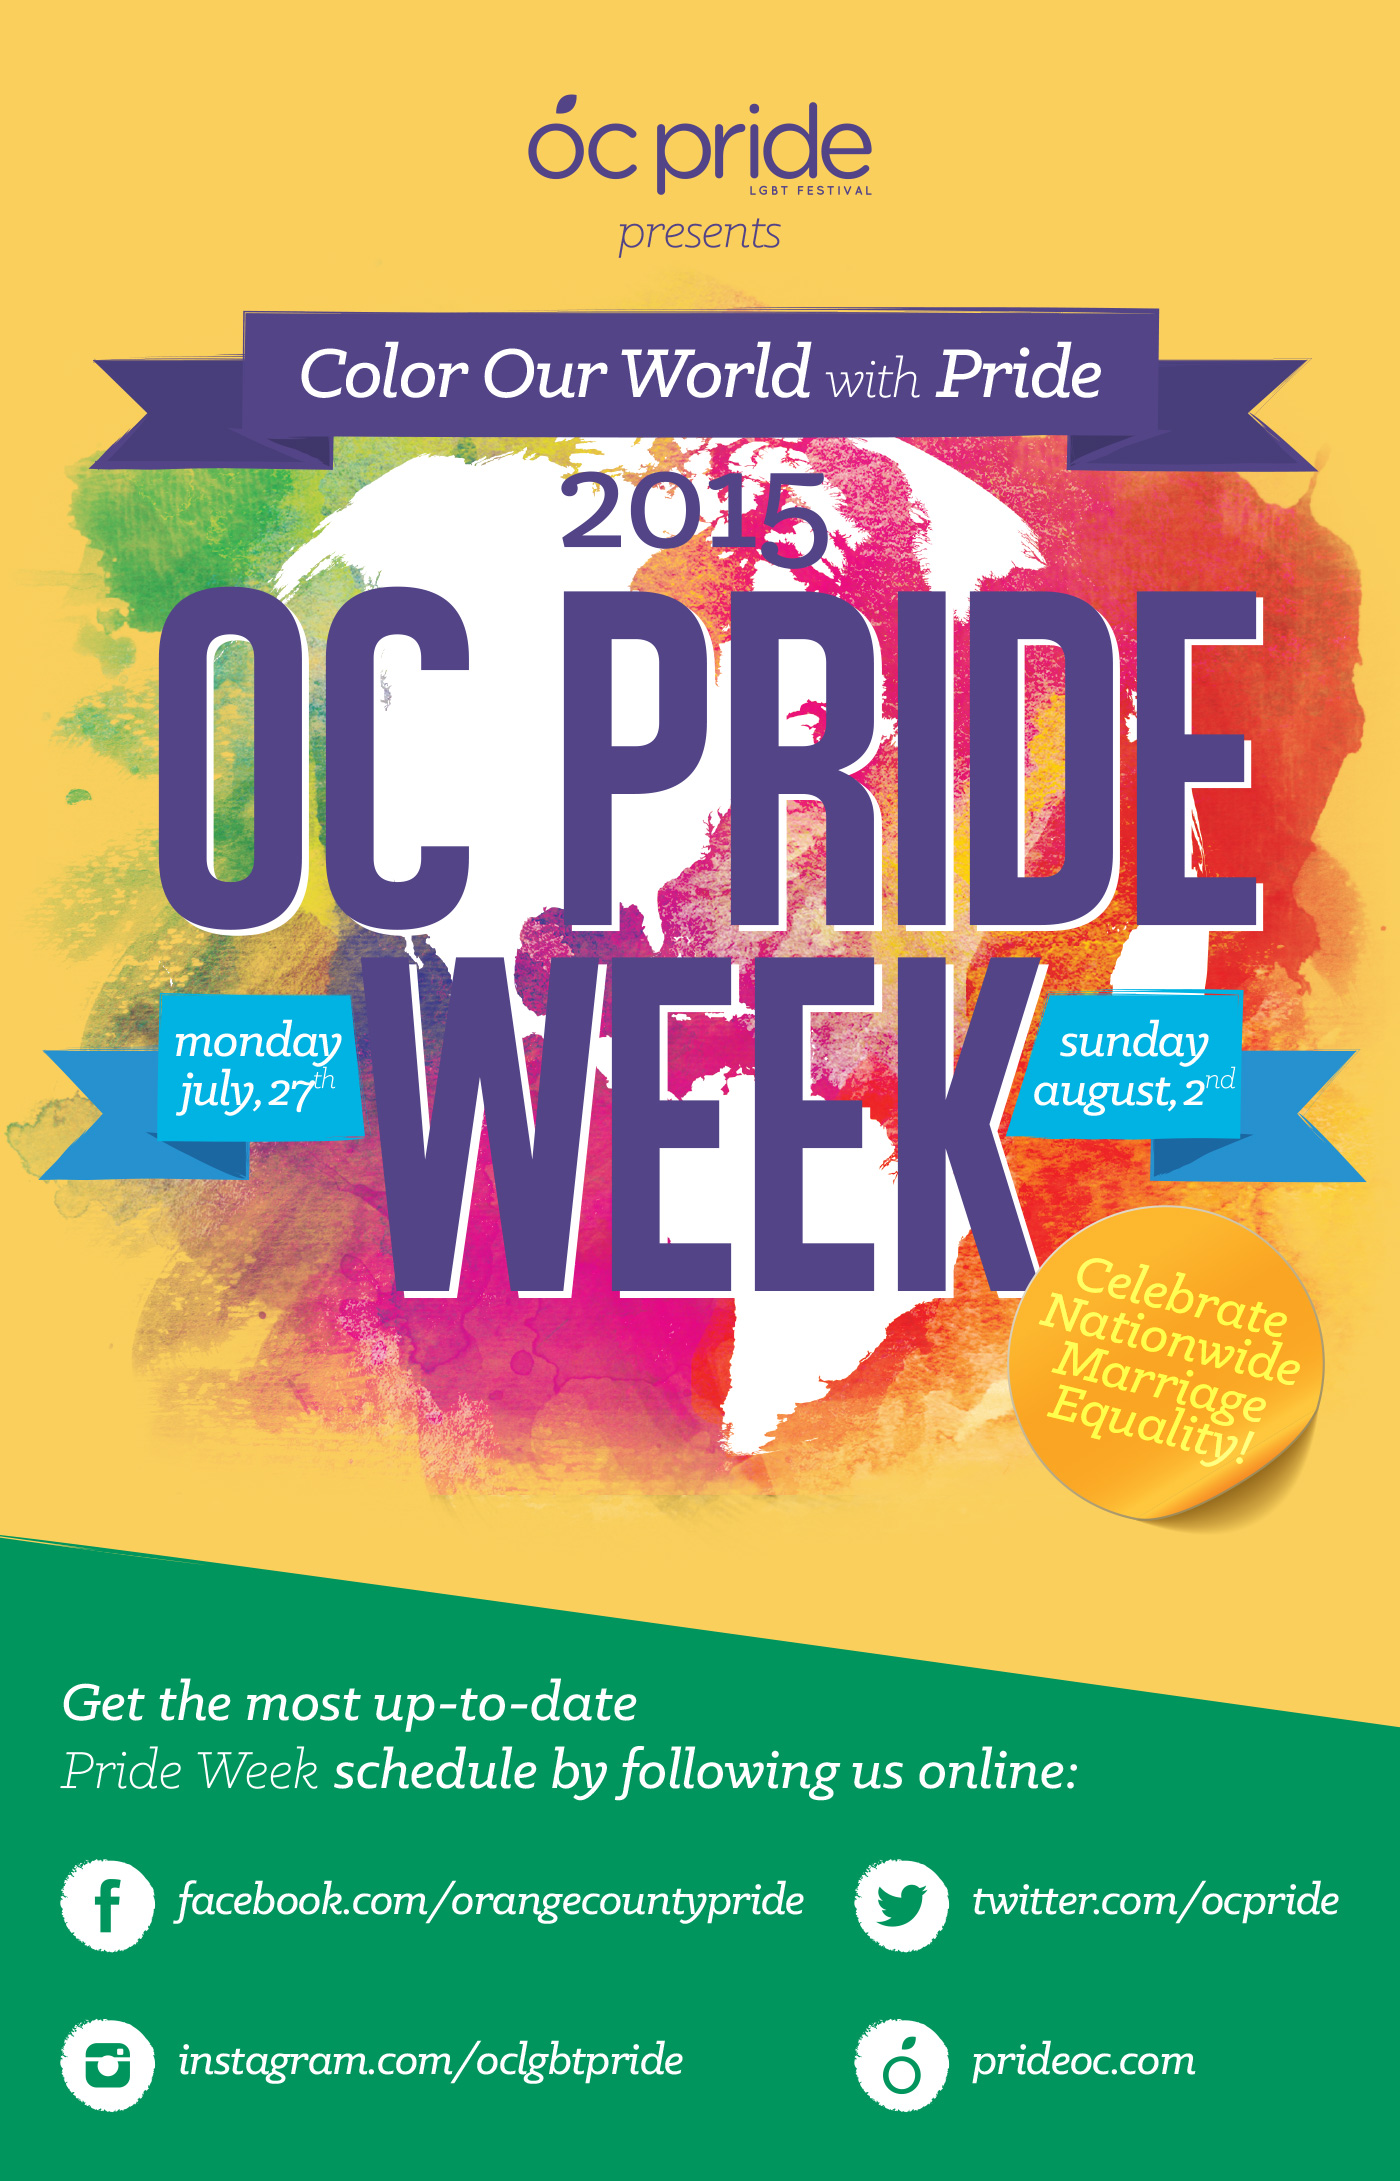 Image: OC Pride Guide 2015